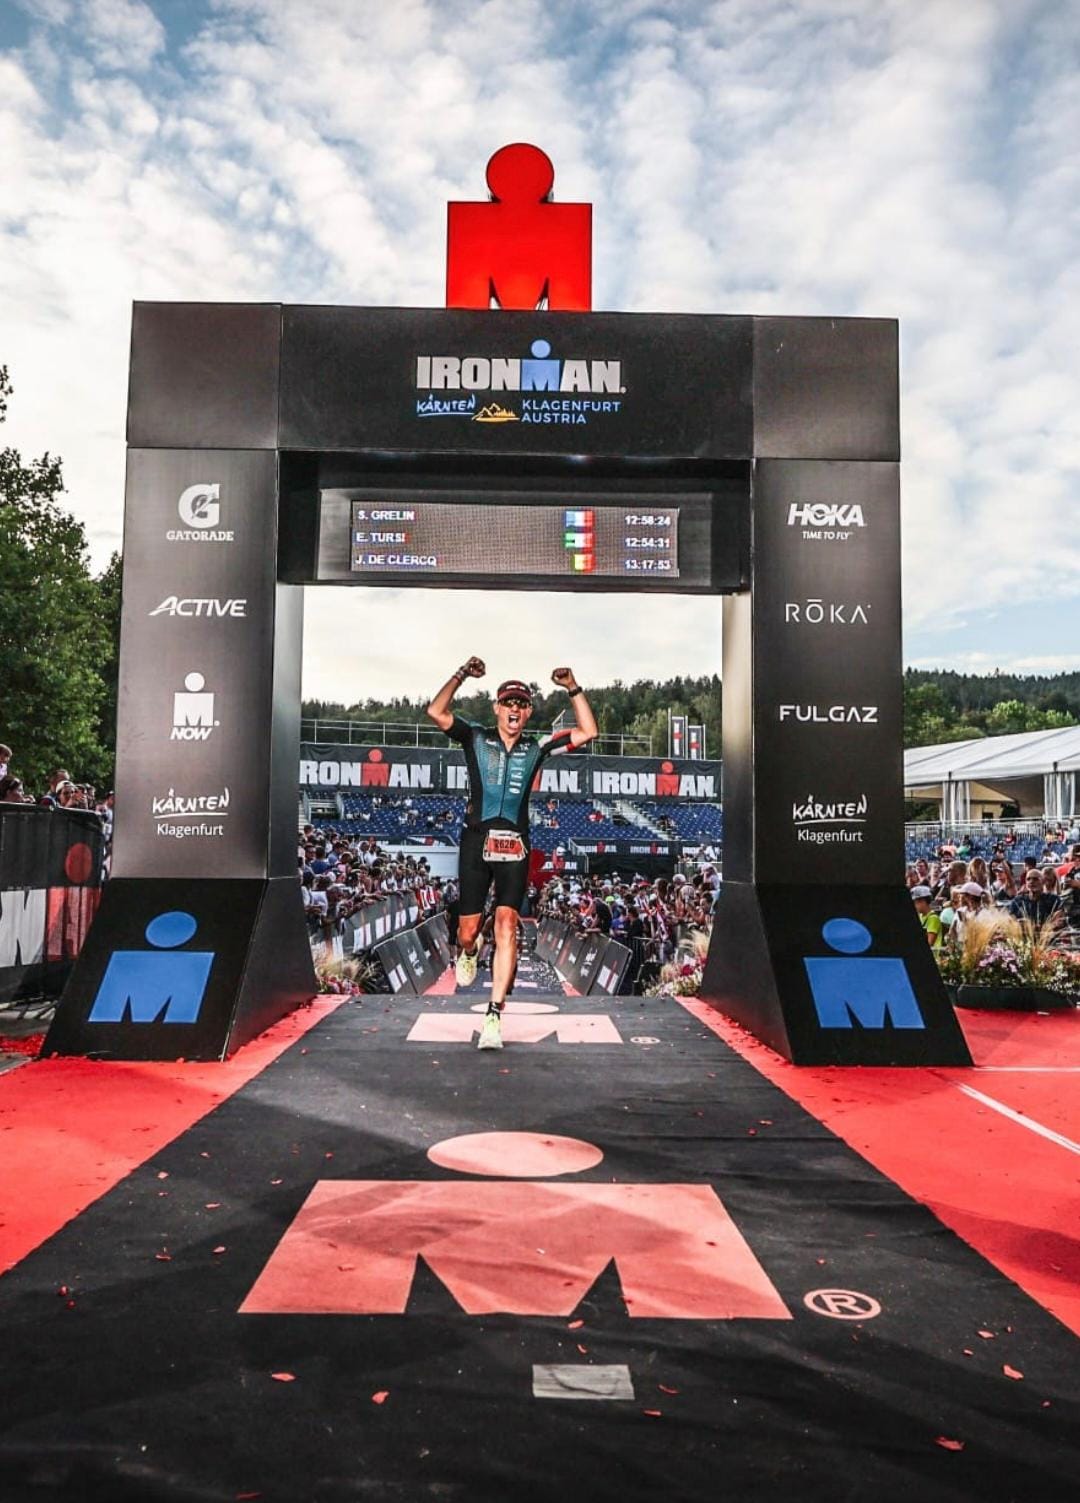 Il saronnese Ezio Tursi racconta la sua partecipazione all’Ironman di Klagenfurt in Austria